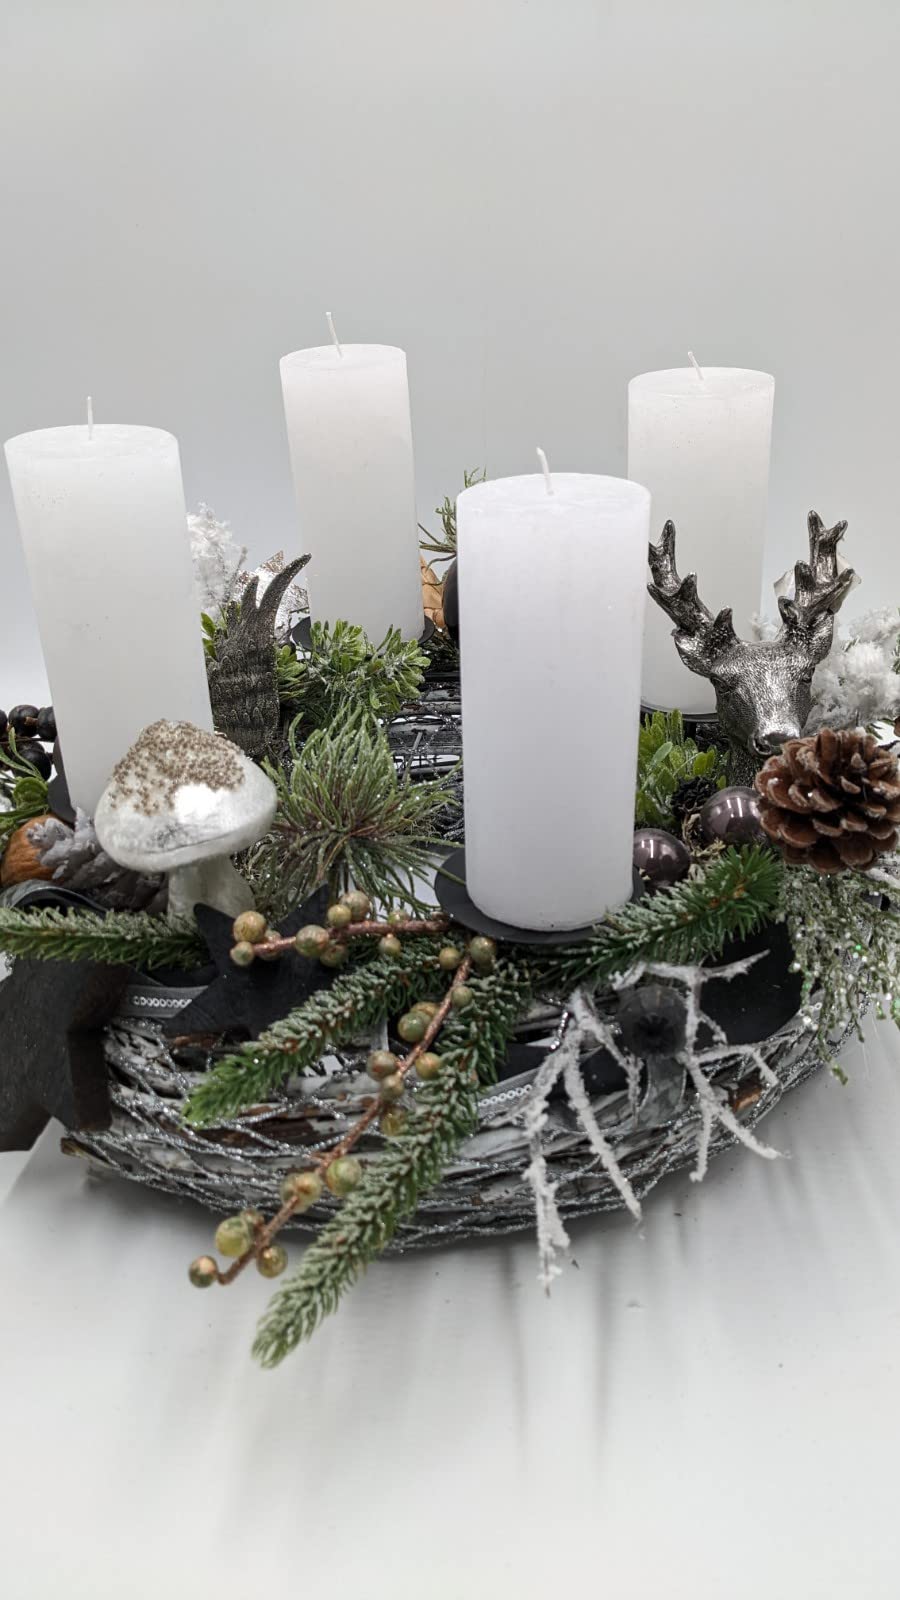 Weihnachtsgesteck Adventskranz Adventsgesteck Kugeln Zapfen Stern Hirschkopf Pilz Kerze Beeren Tanne schwarz weiß